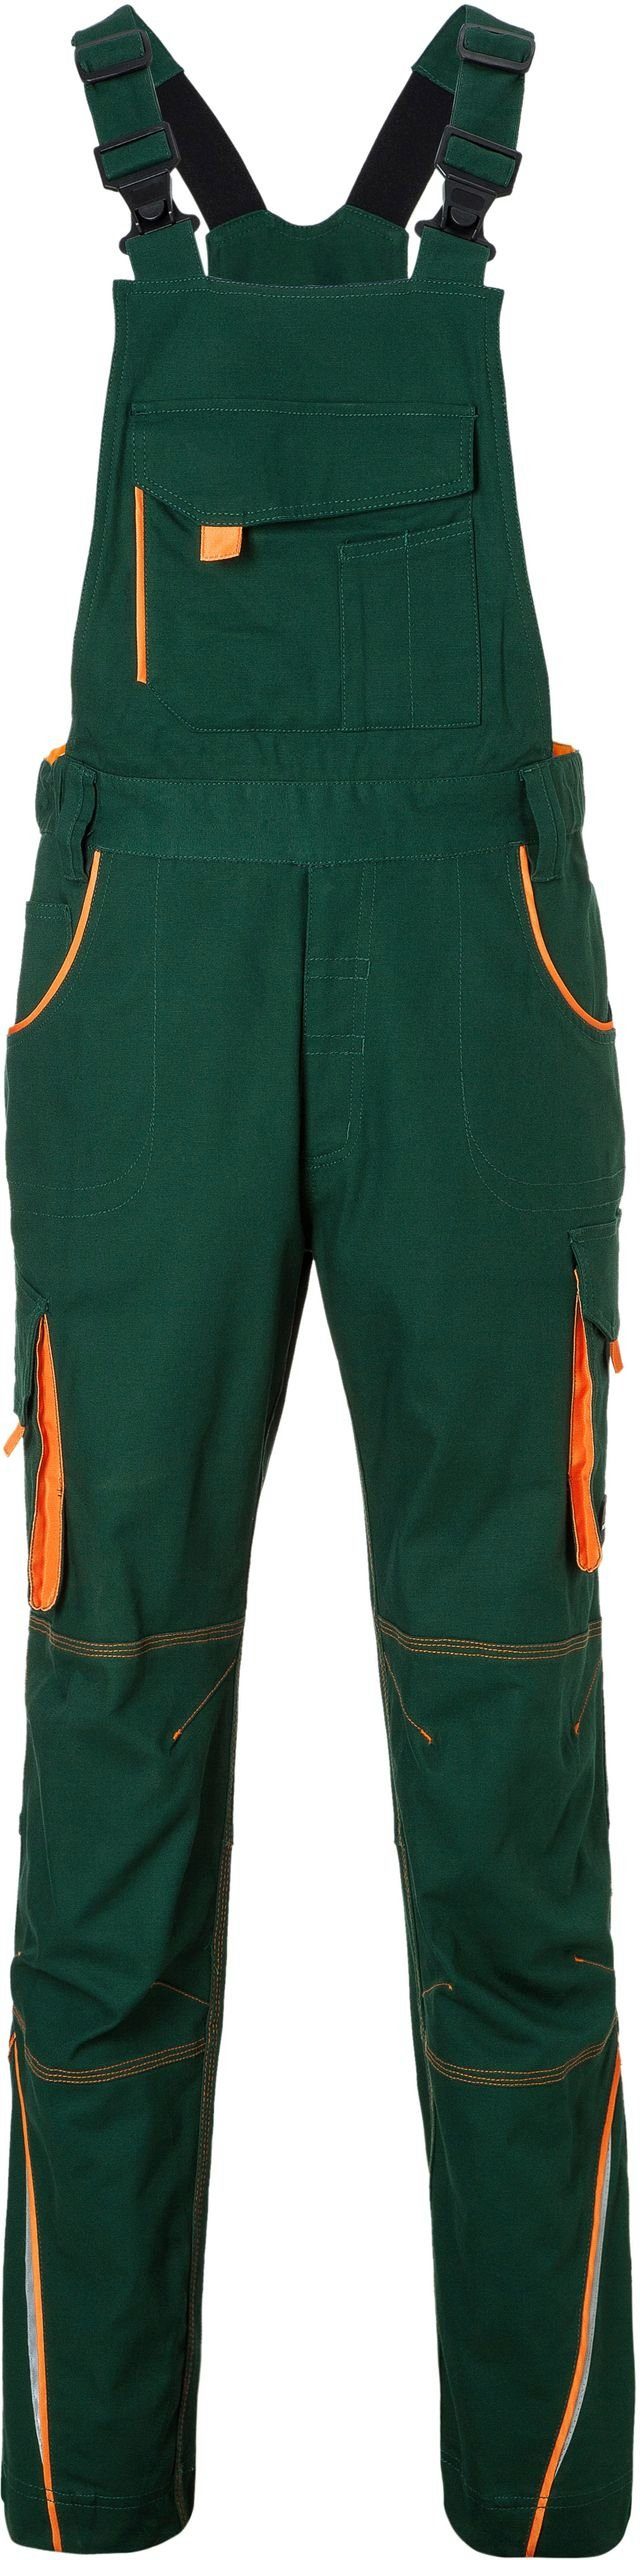 Nicholson FaS50848 dark Latzhose James Arbeitslatzhose Workwear & green/orange